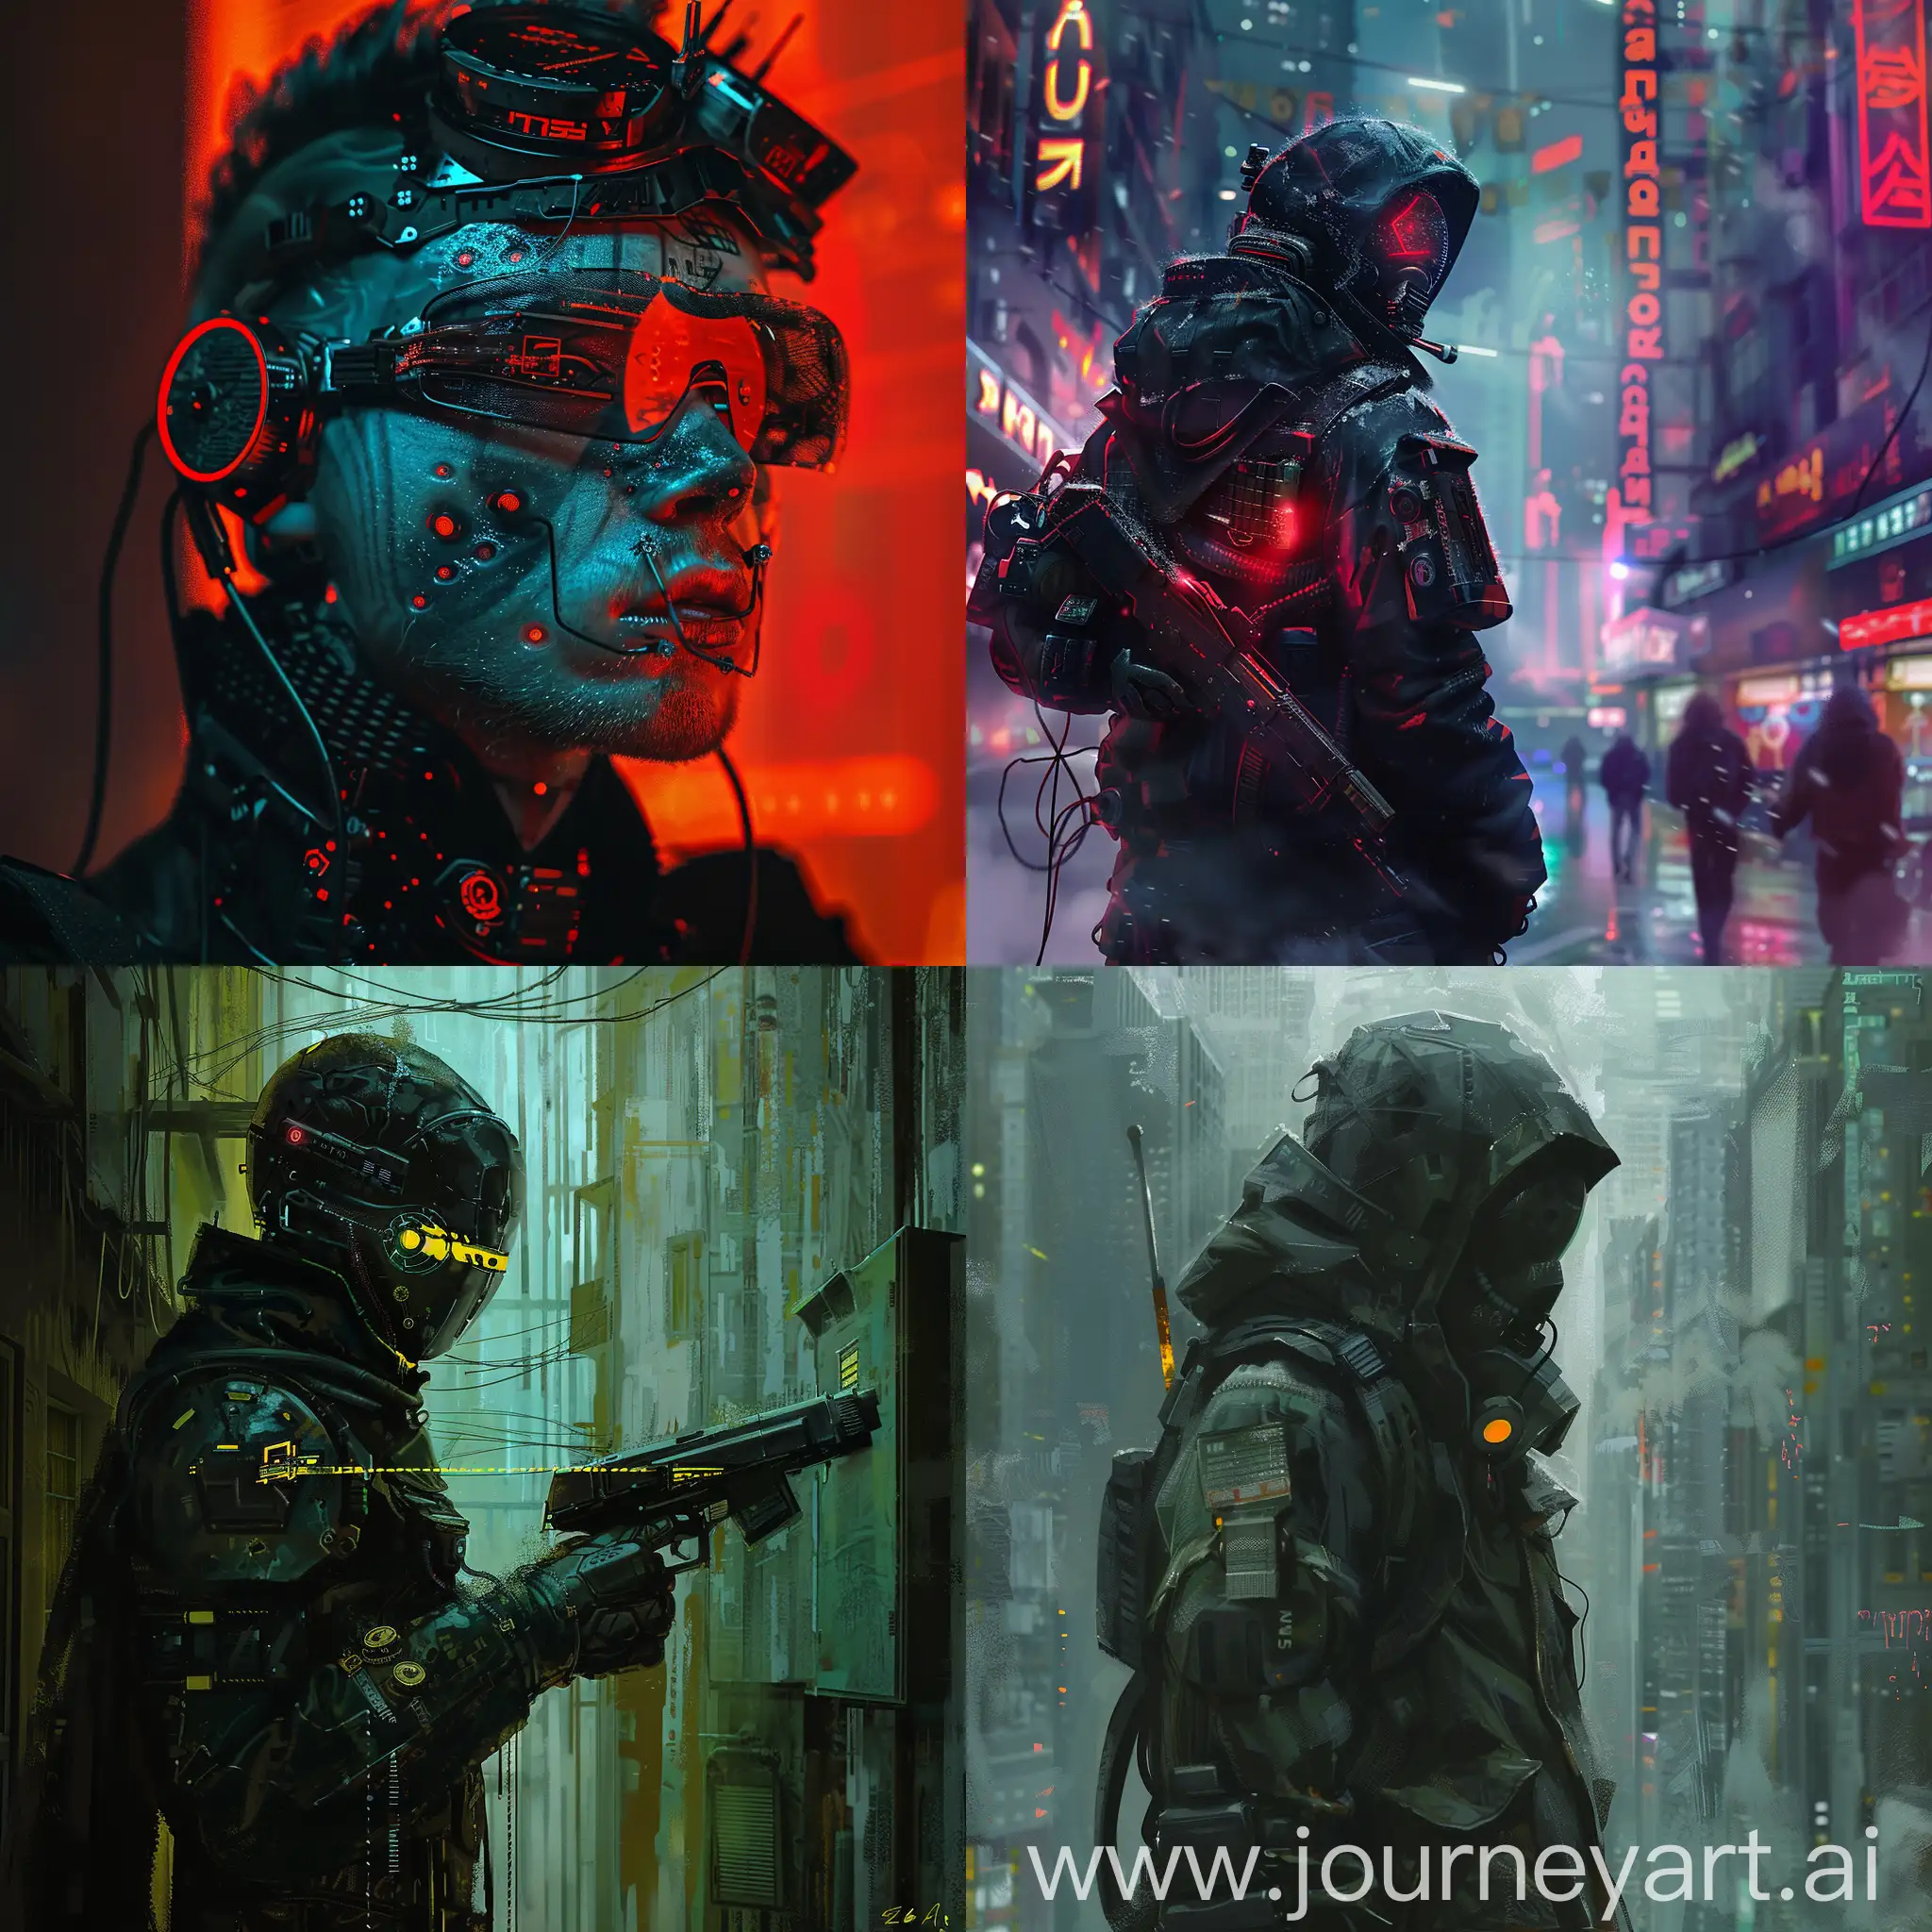 Russian-Cyberpunk-Art-Futuristic-Cityscape-with-Vibrant-Neon-Lights